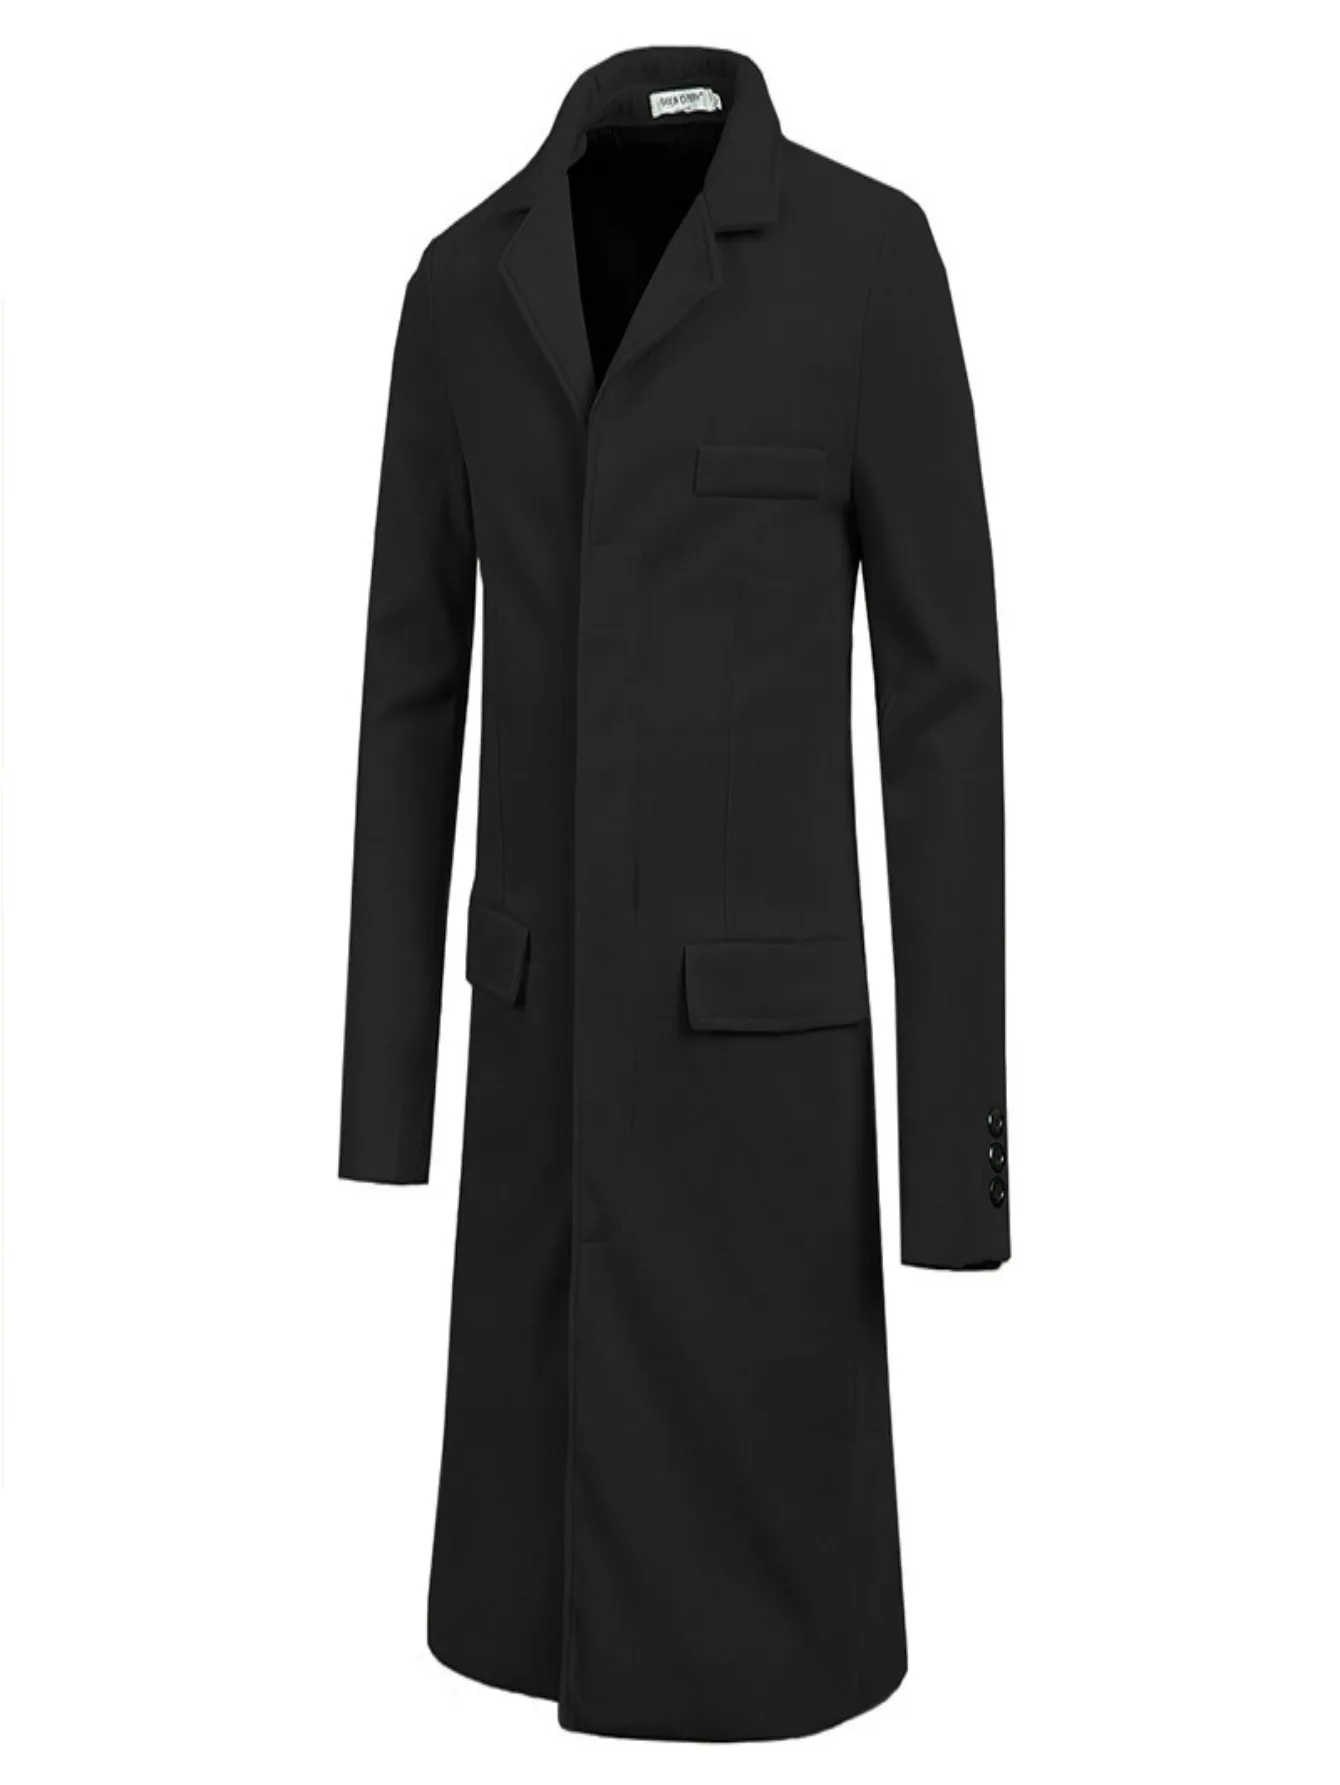 2019 Новая мужская мода 80s крутой Тренч тренд Европейский Тонкий бренд Топ пальто длинный стиль высококачественный дропшиппинг хлопковая